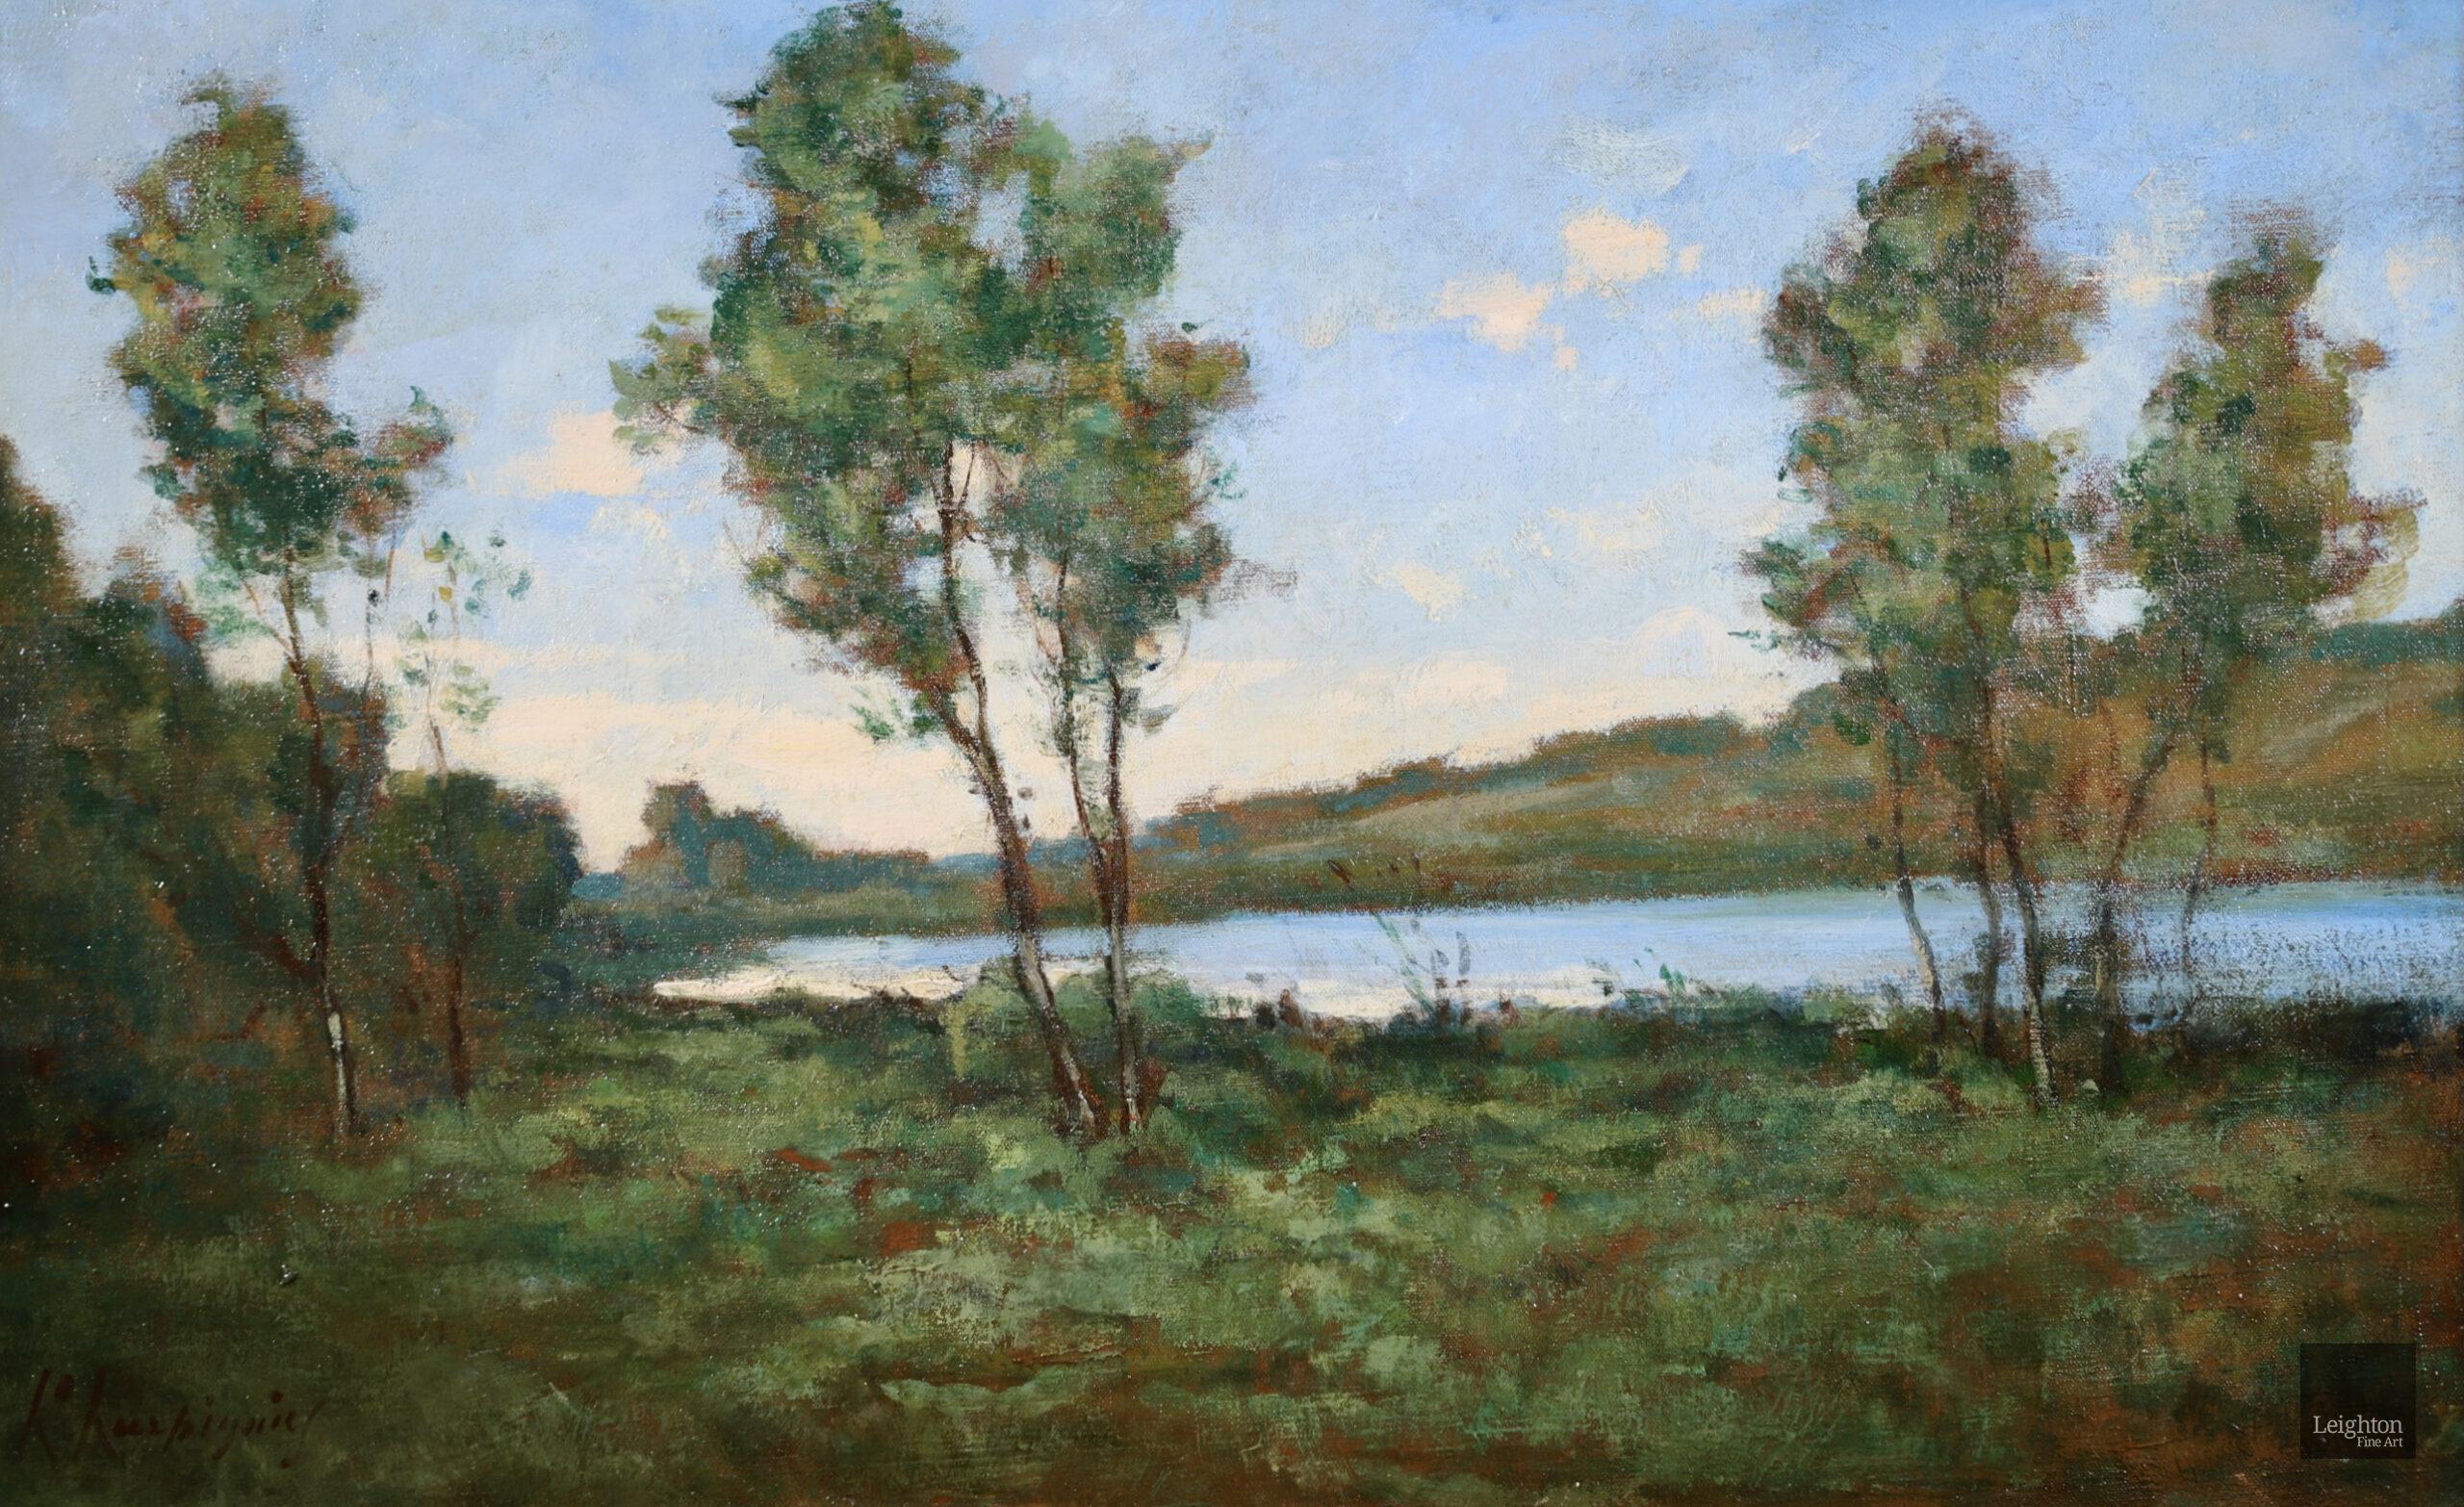 Bord de lac - Painting by Henri Joseph Harpignies